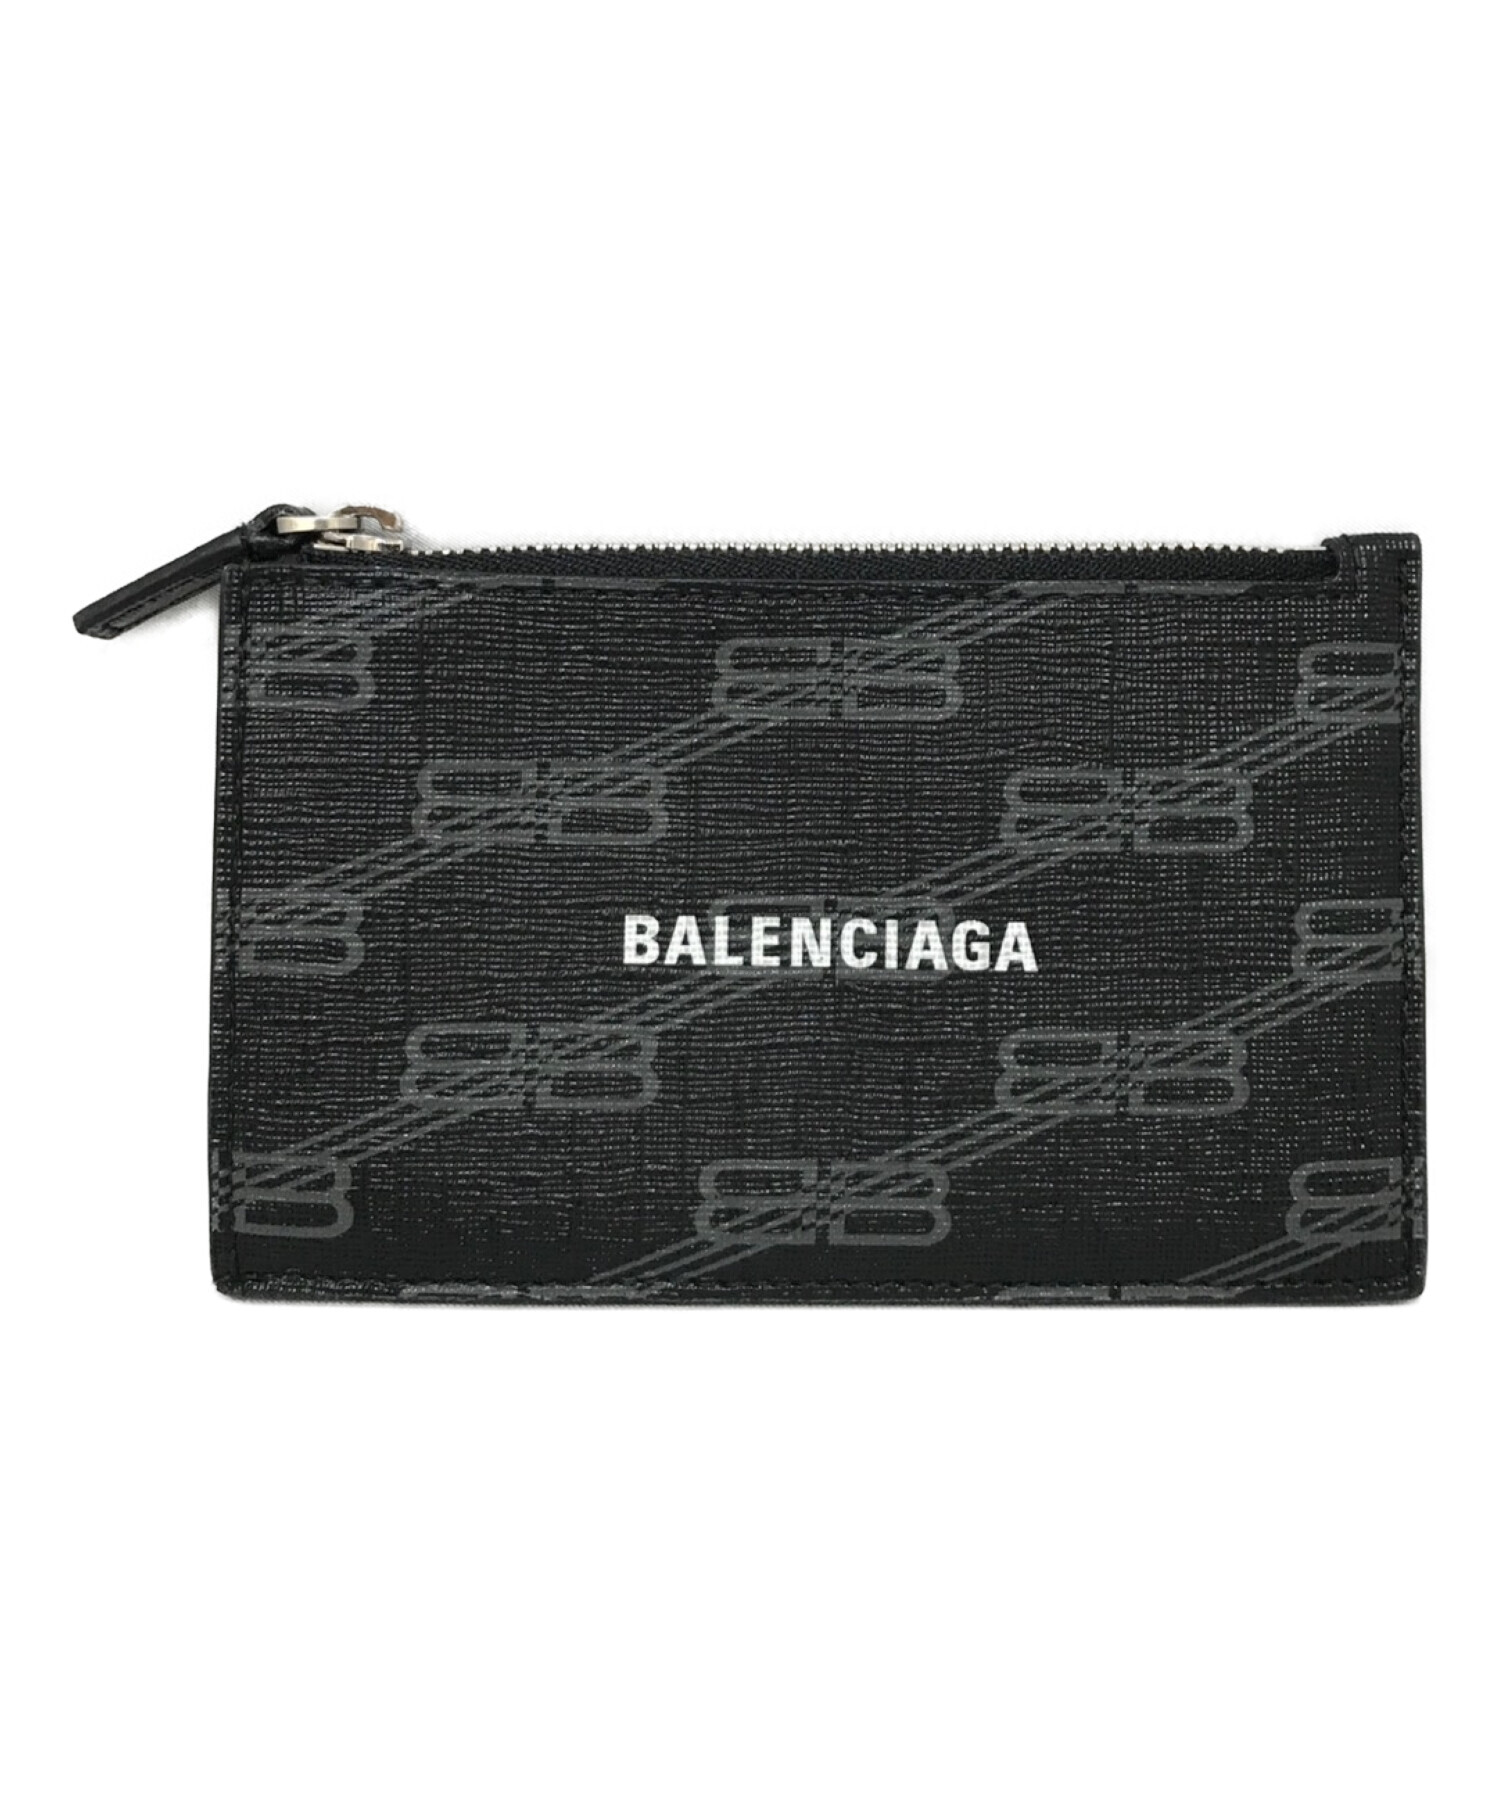 BALENCIAGA (バレンシアガ) フラグメントケース/コインケース ブラック